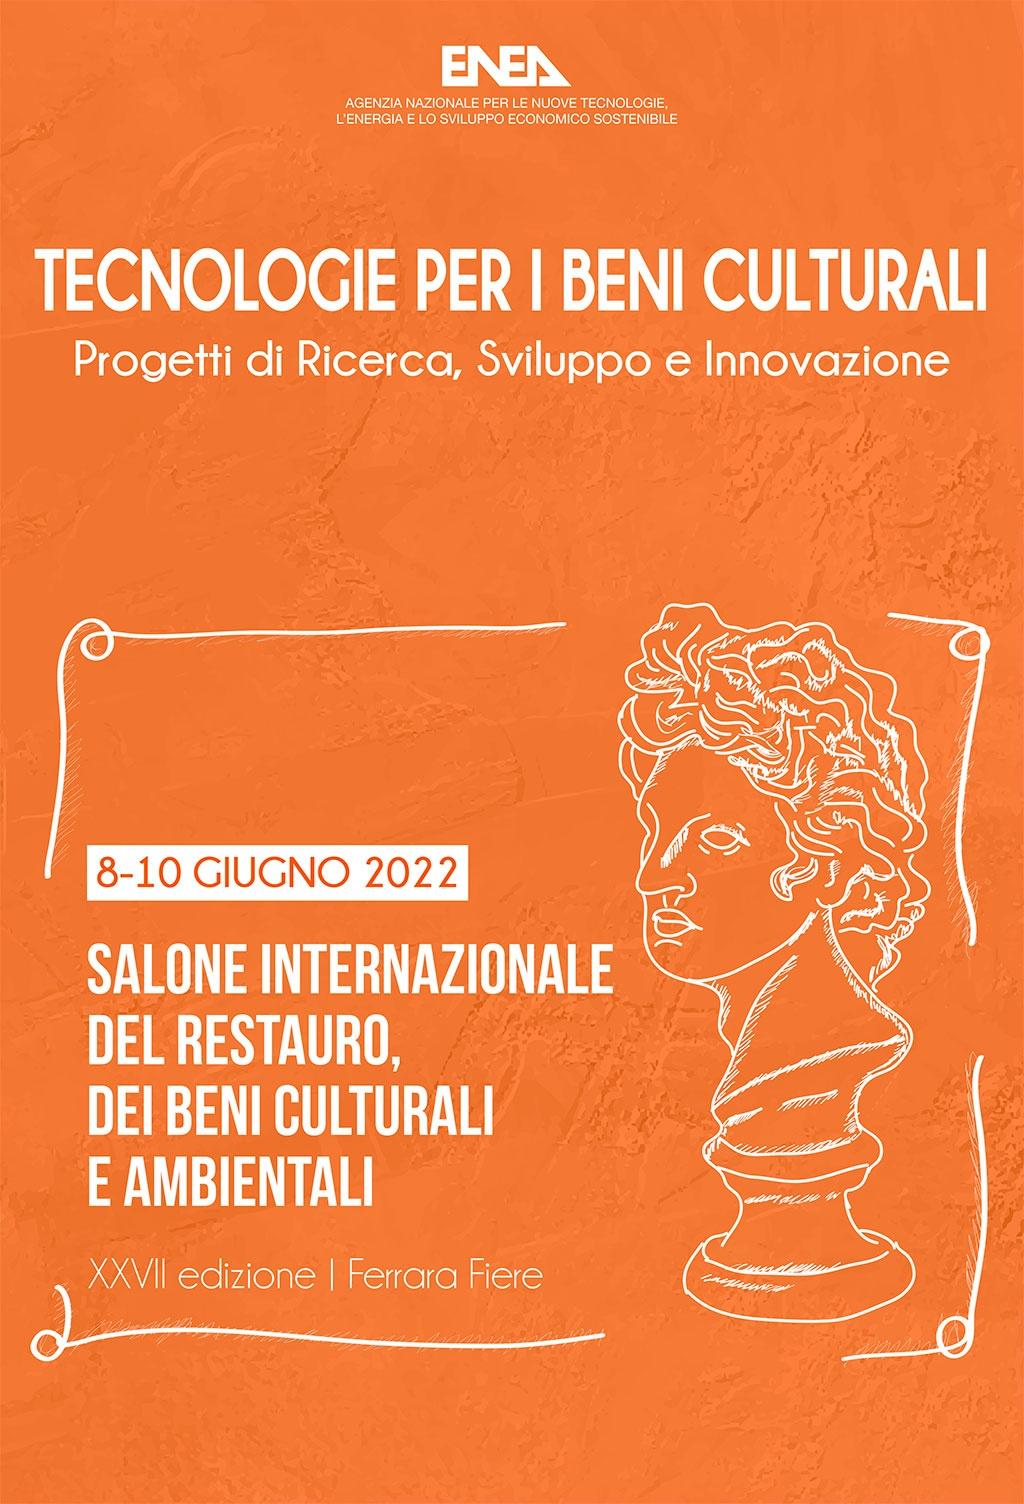 tecnologie ENEA per i beni culturali